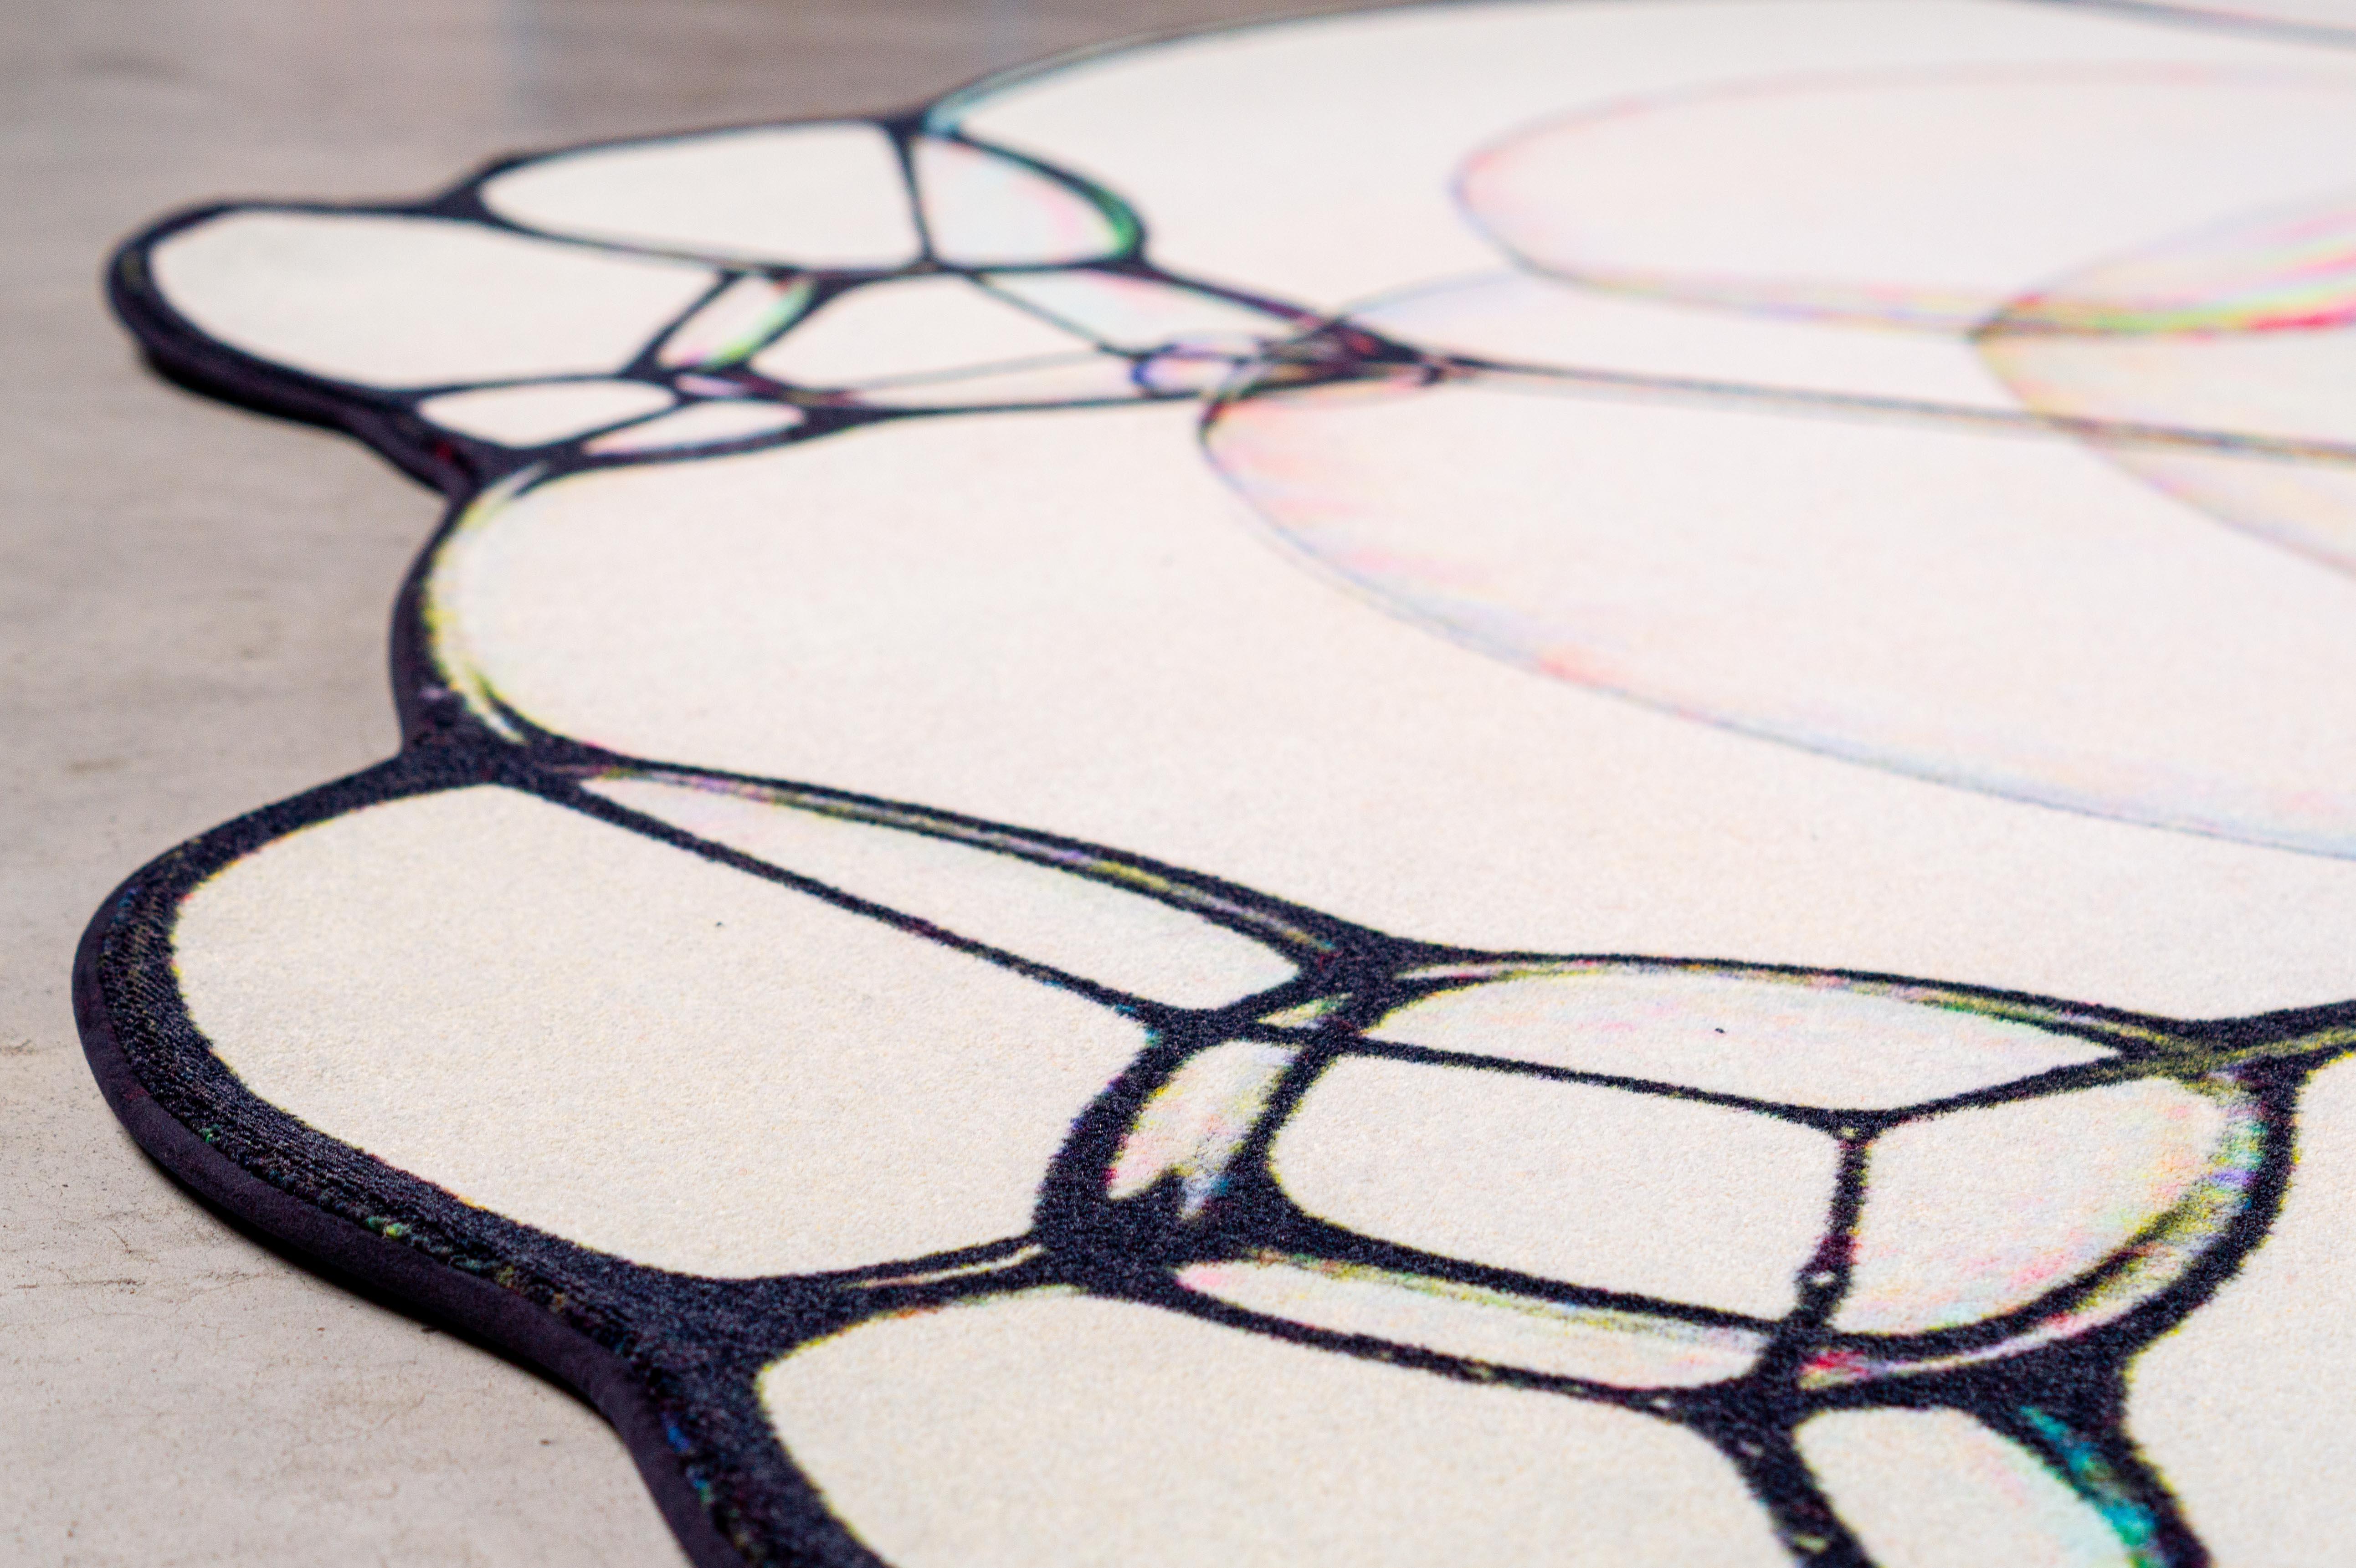 Grand tapis naturel Moooi en polyamide de fil souple de Sjoerd Vroonland

Sjoerd Vroonland est un maître de l'artisanat révisé et un remarquable créateur de meubles. Il est surtout connu pour sa 